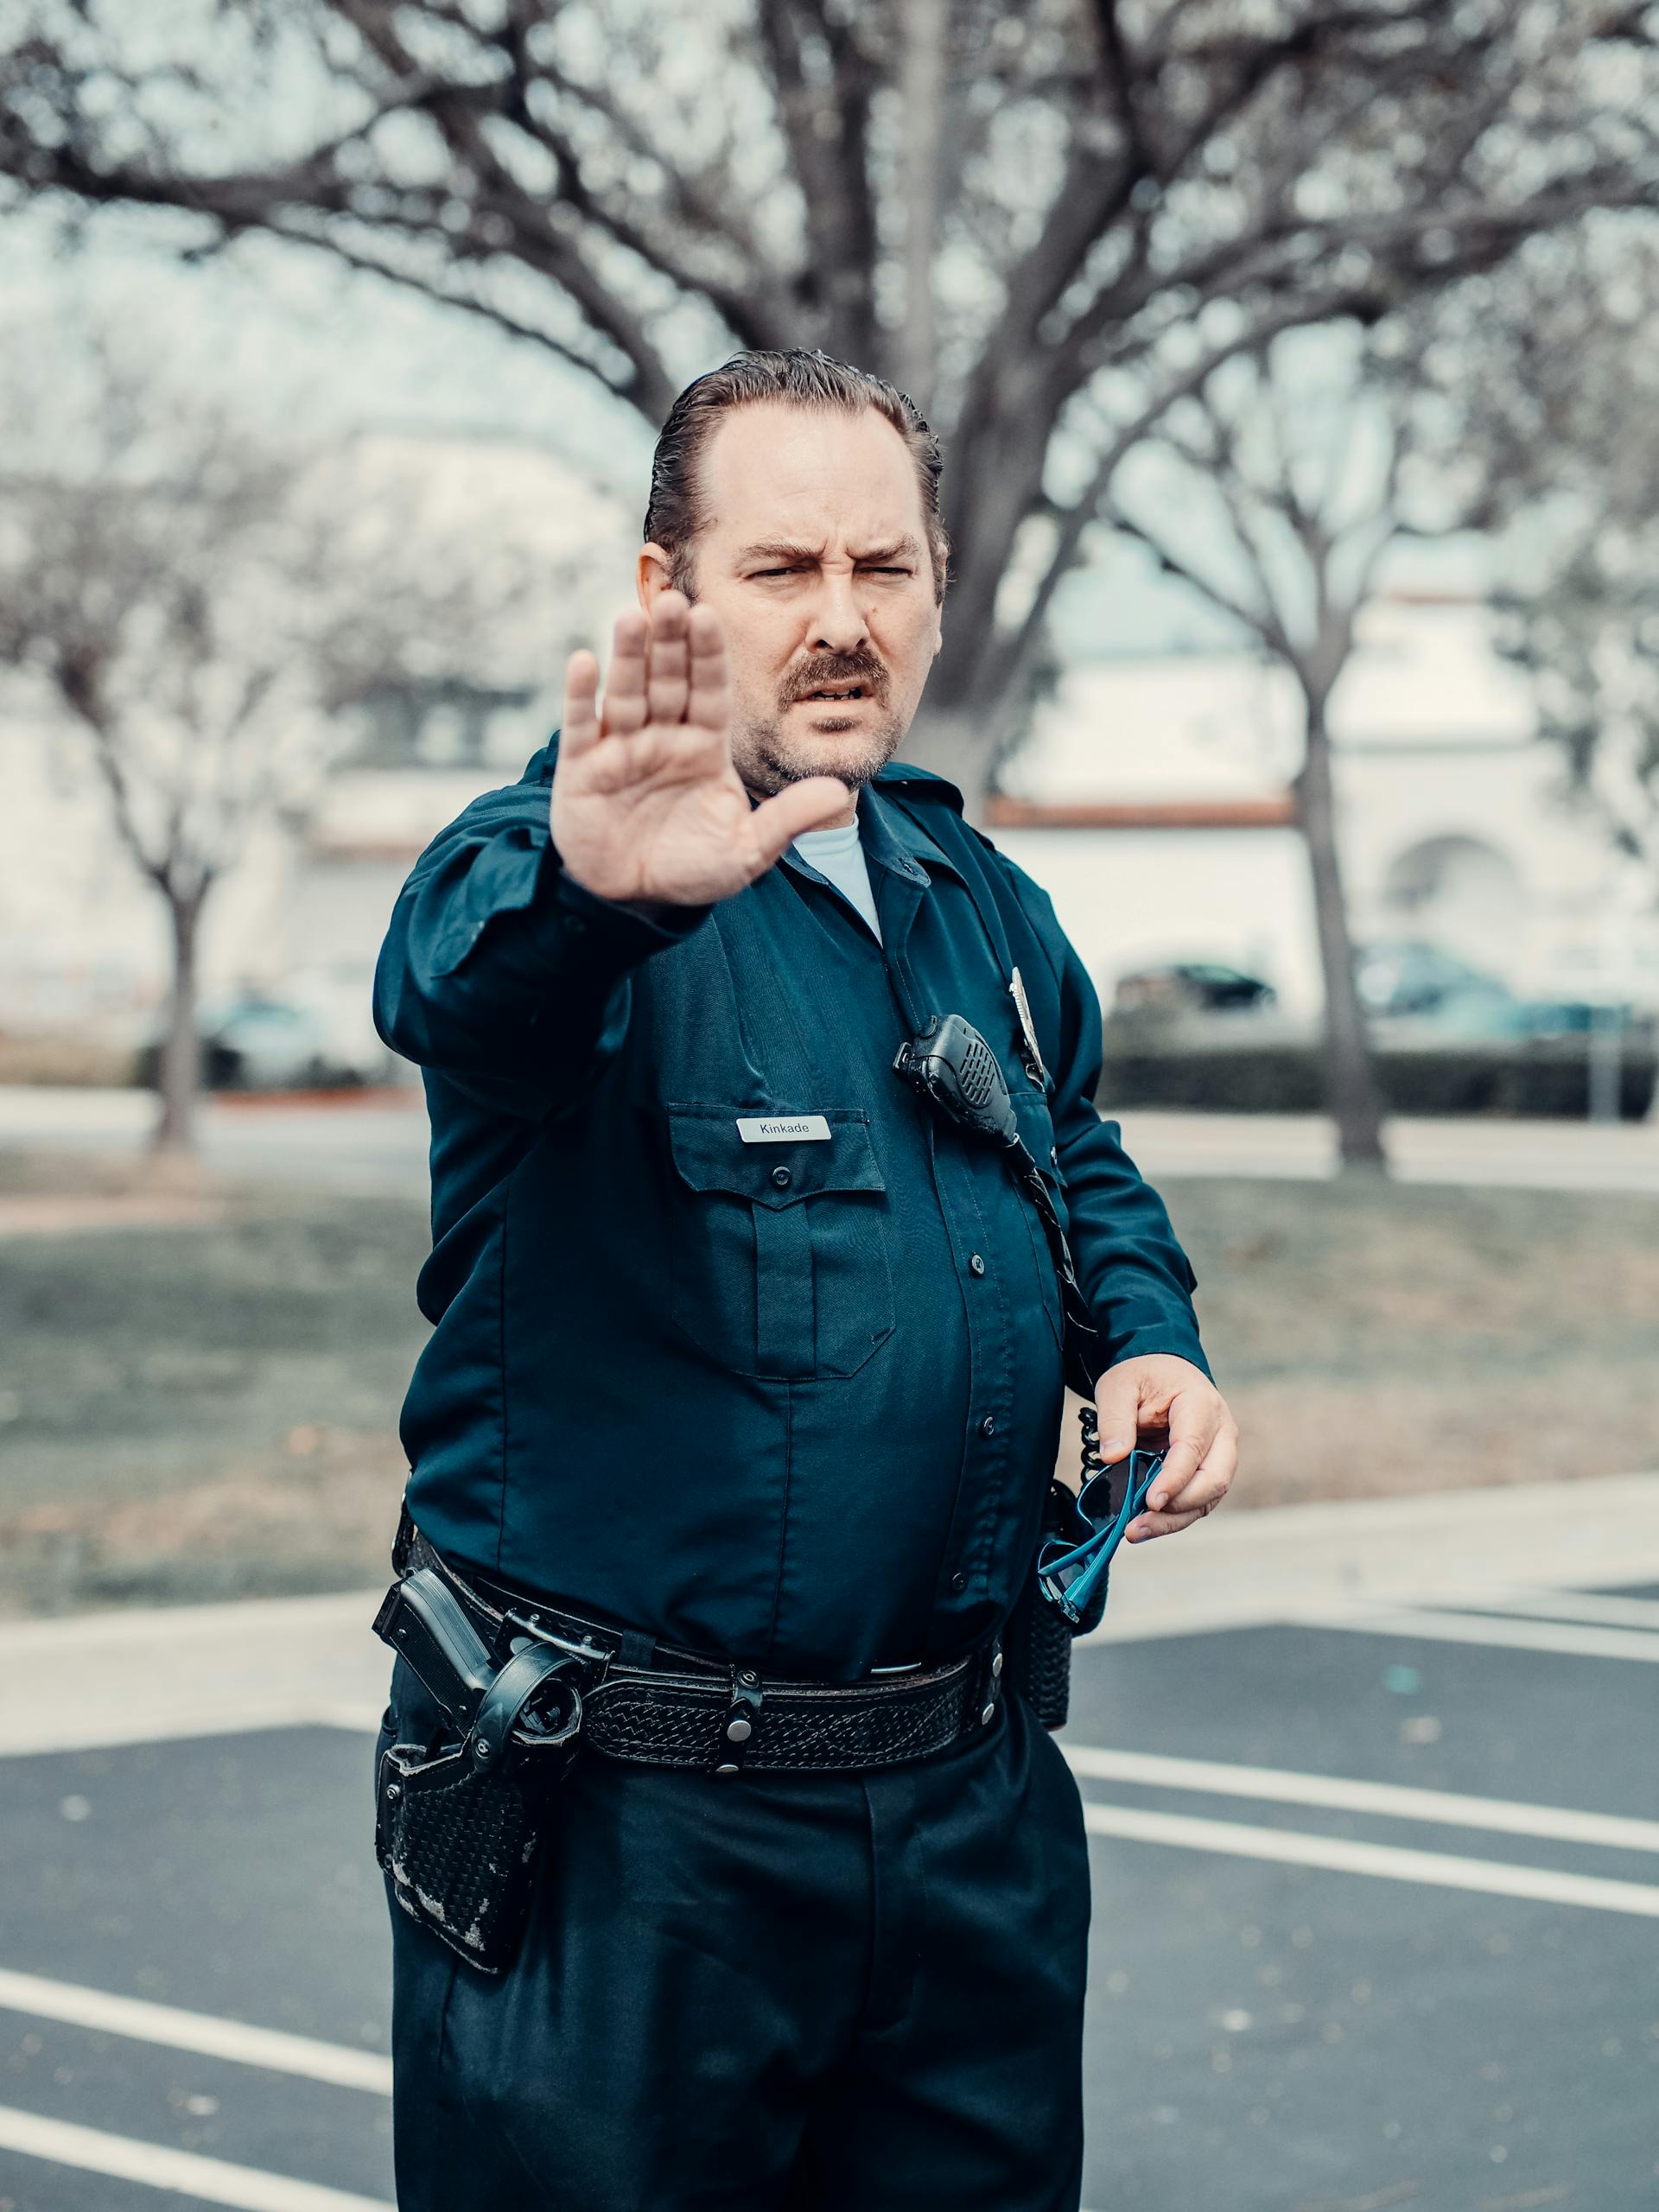 Ein Polizist mit erhobenem Arm | Quelle: Pexels